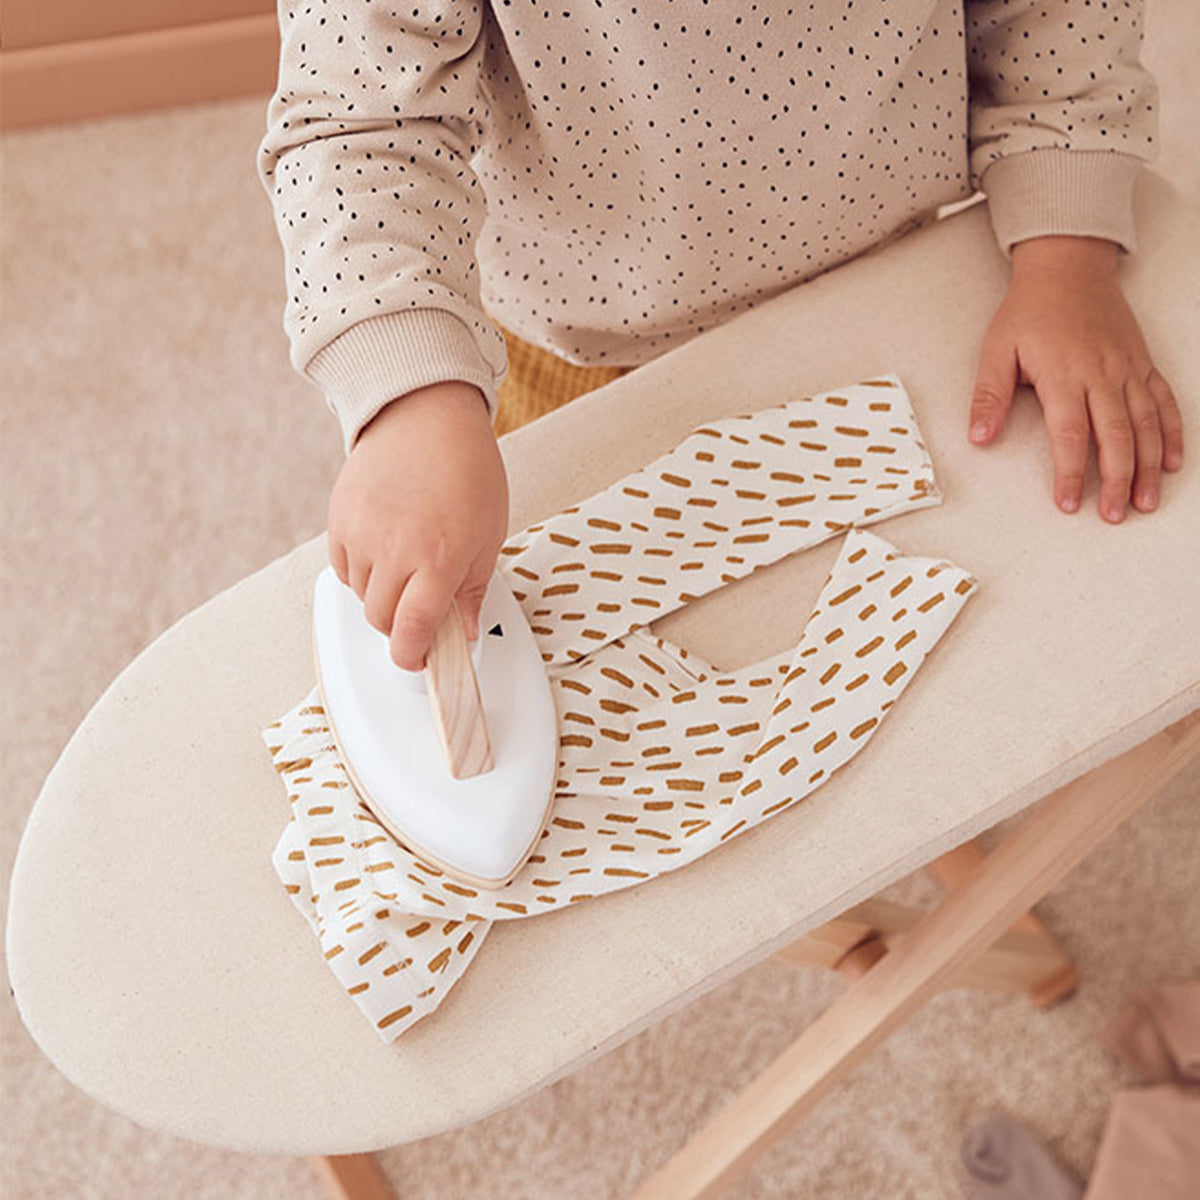 Met de Kid's Concept strijkplank met strijkijzer kan jouw kindje net als papa of mama lekker strijken. Deze prachtige set met rustige kleuren staat perfect in elke (speel)kamer. VanZus.